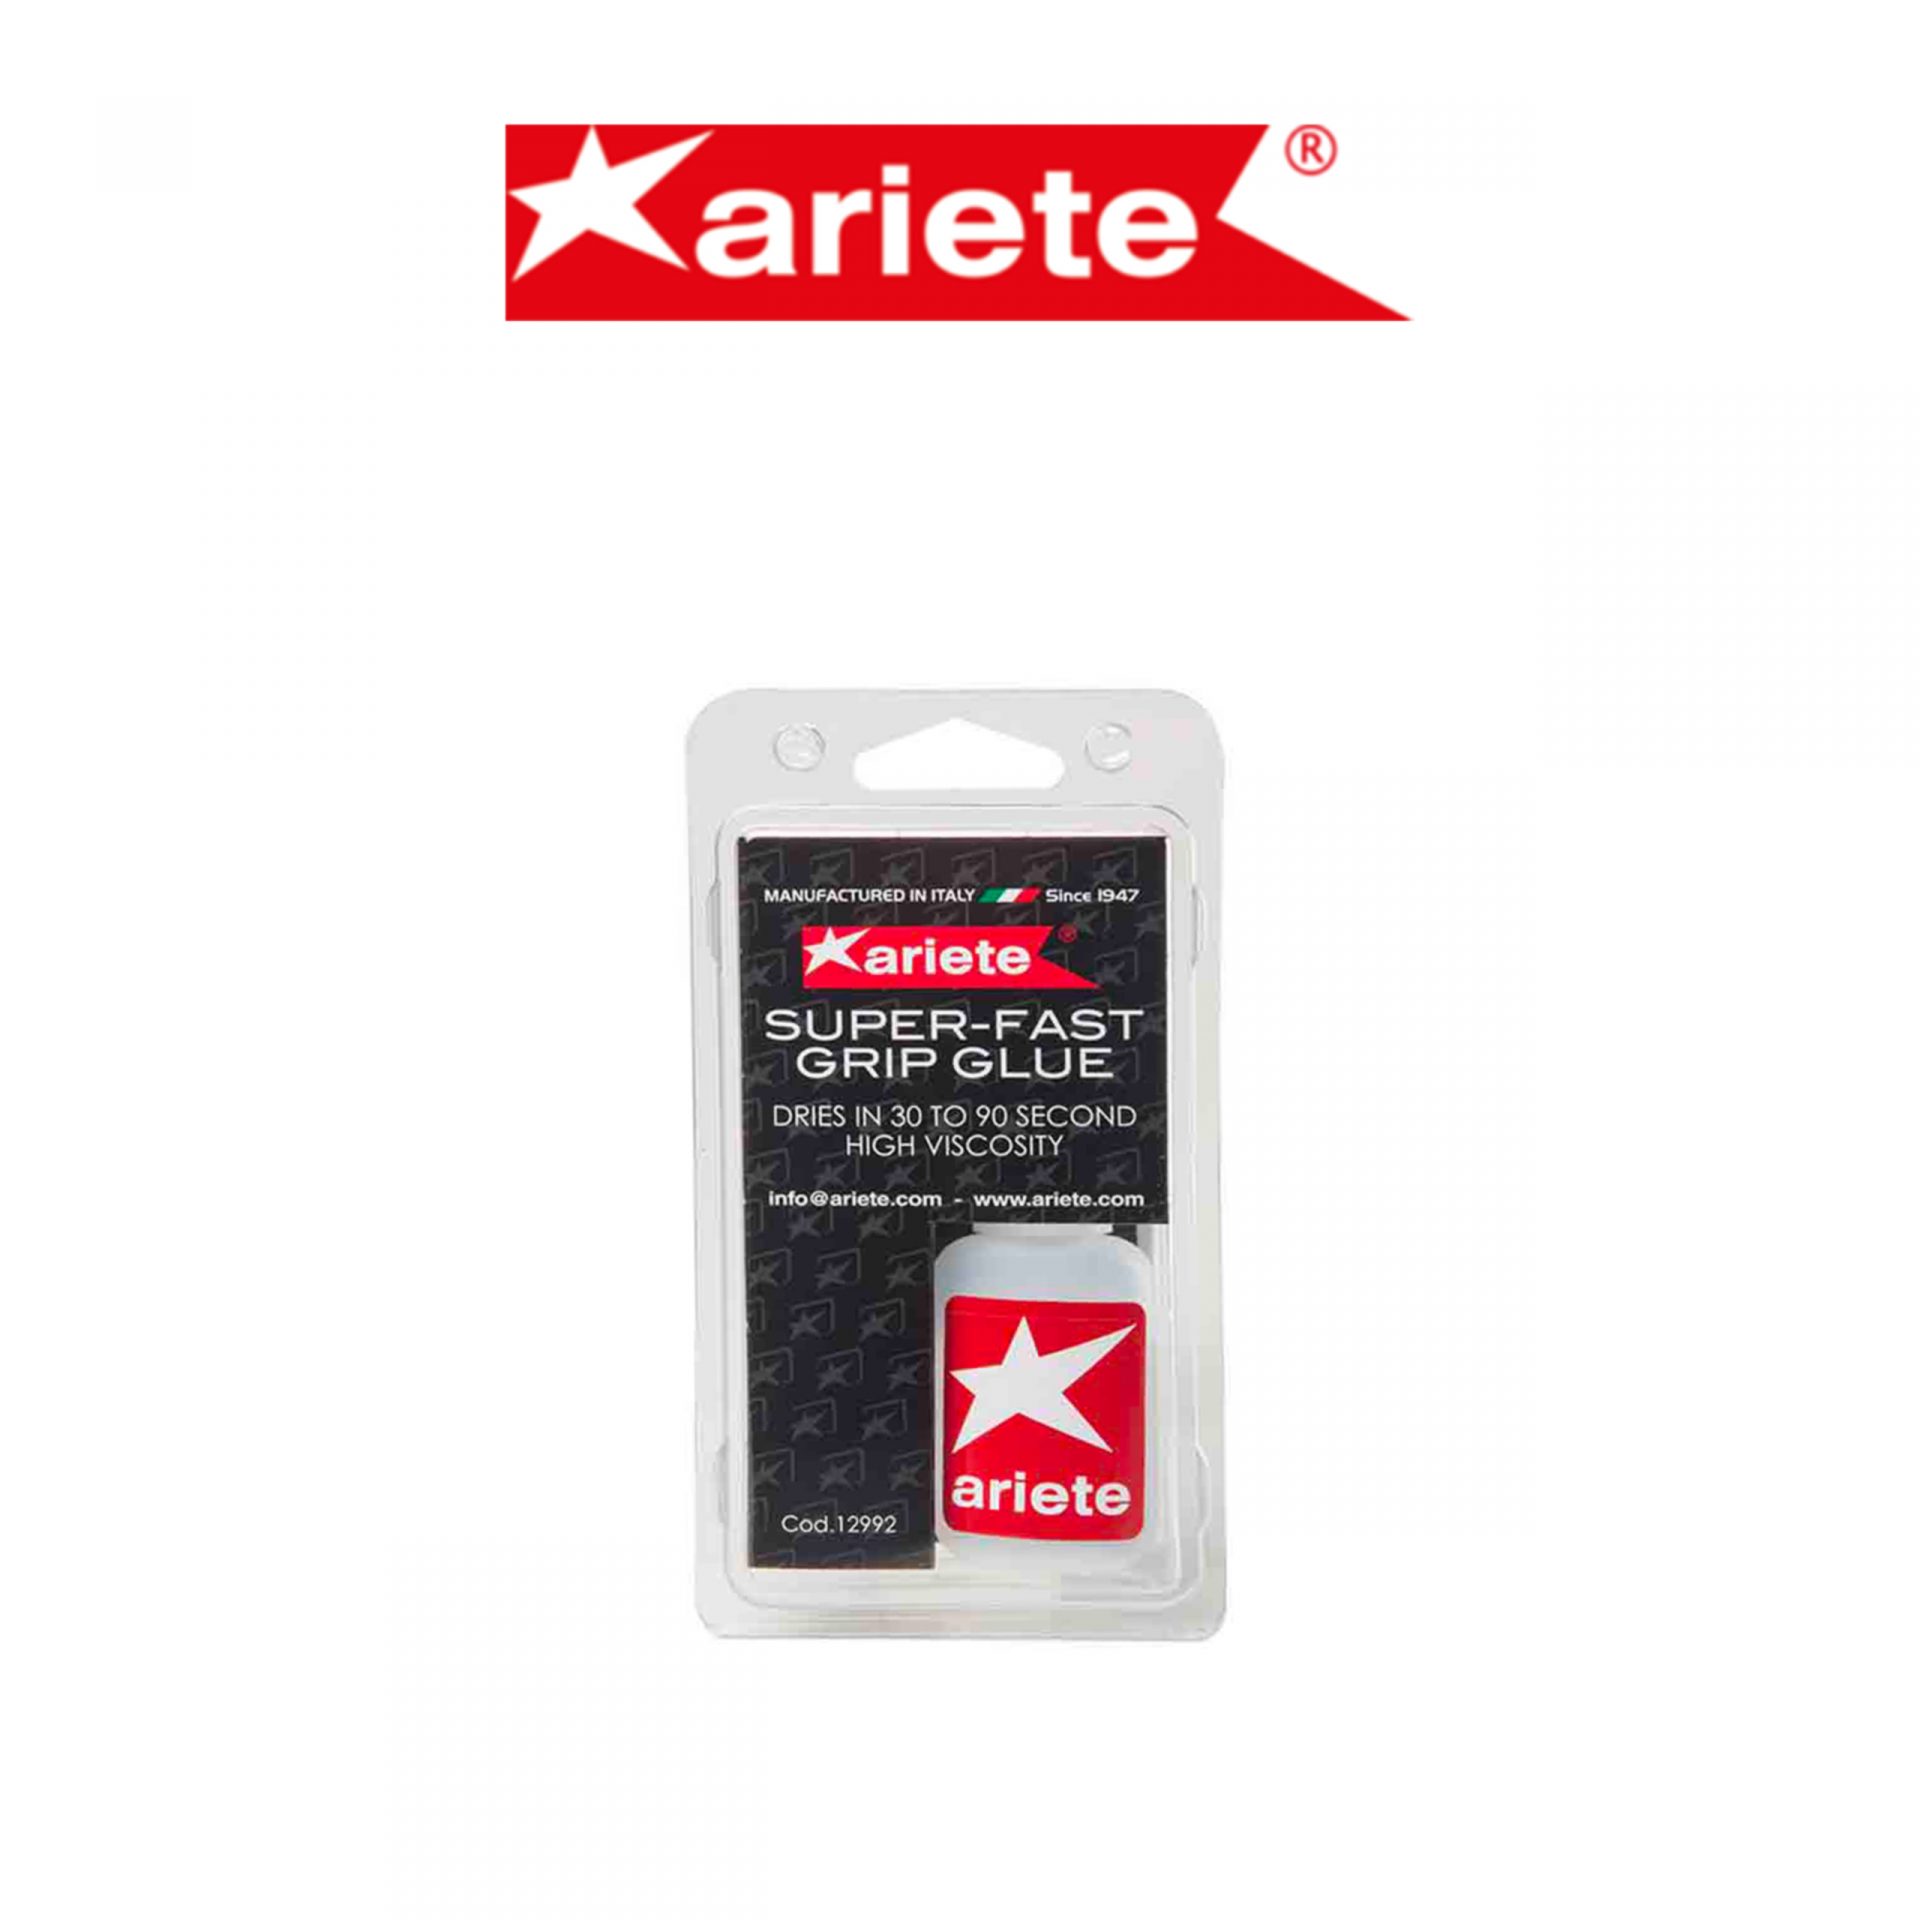 ariete-super-fast-grip-glue-12992